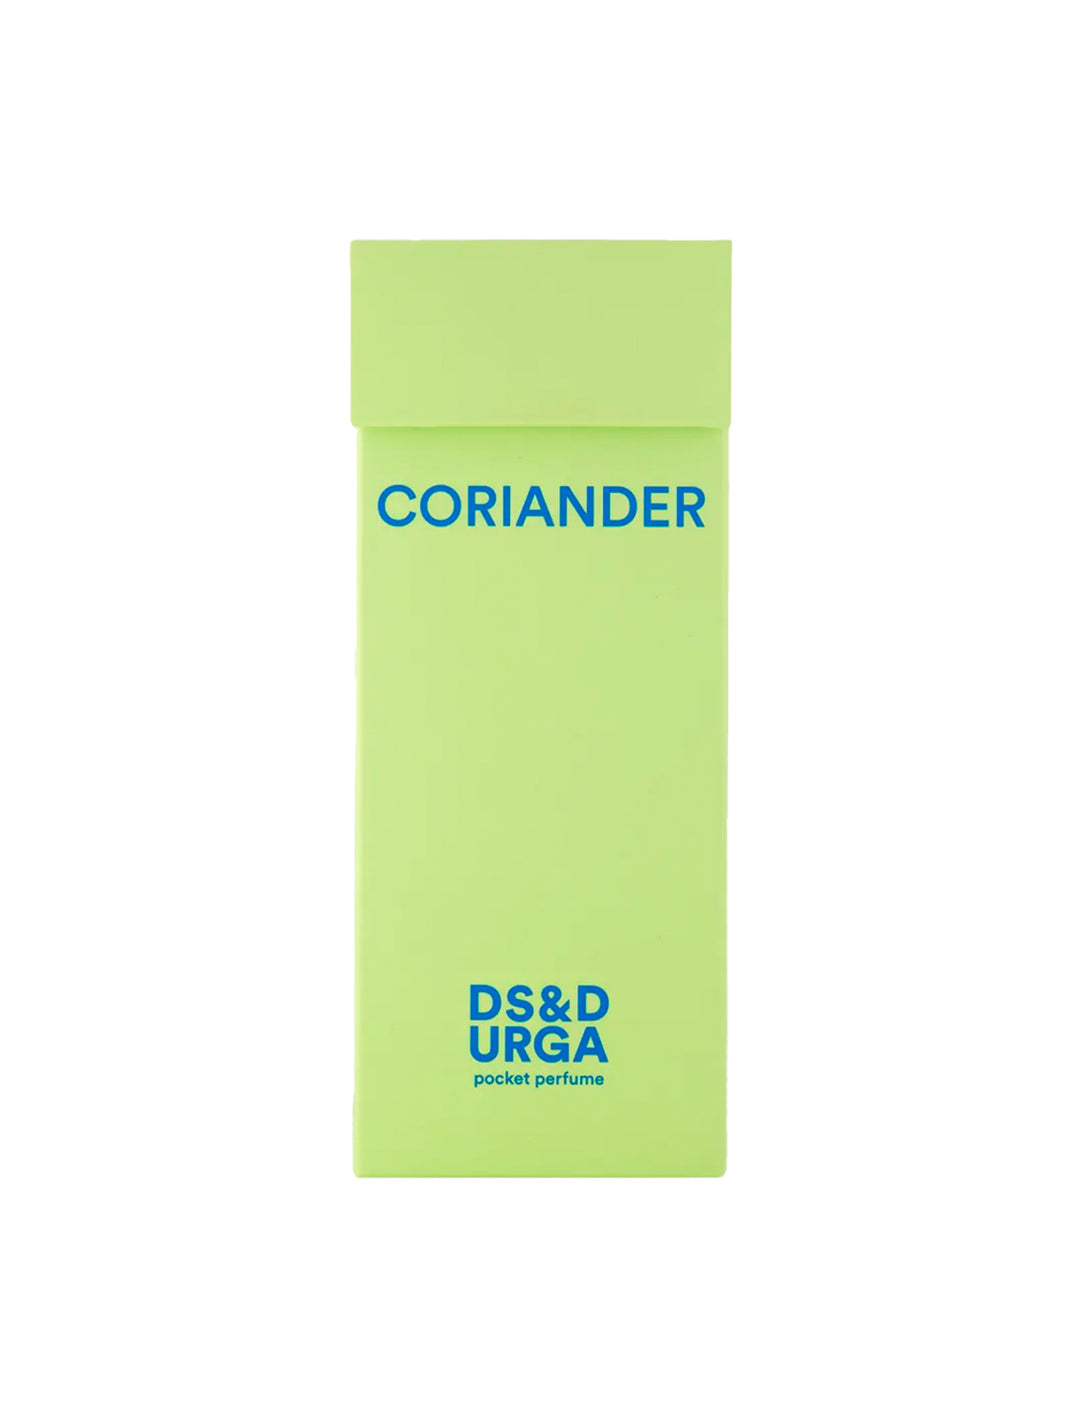 coriander pocket perfume